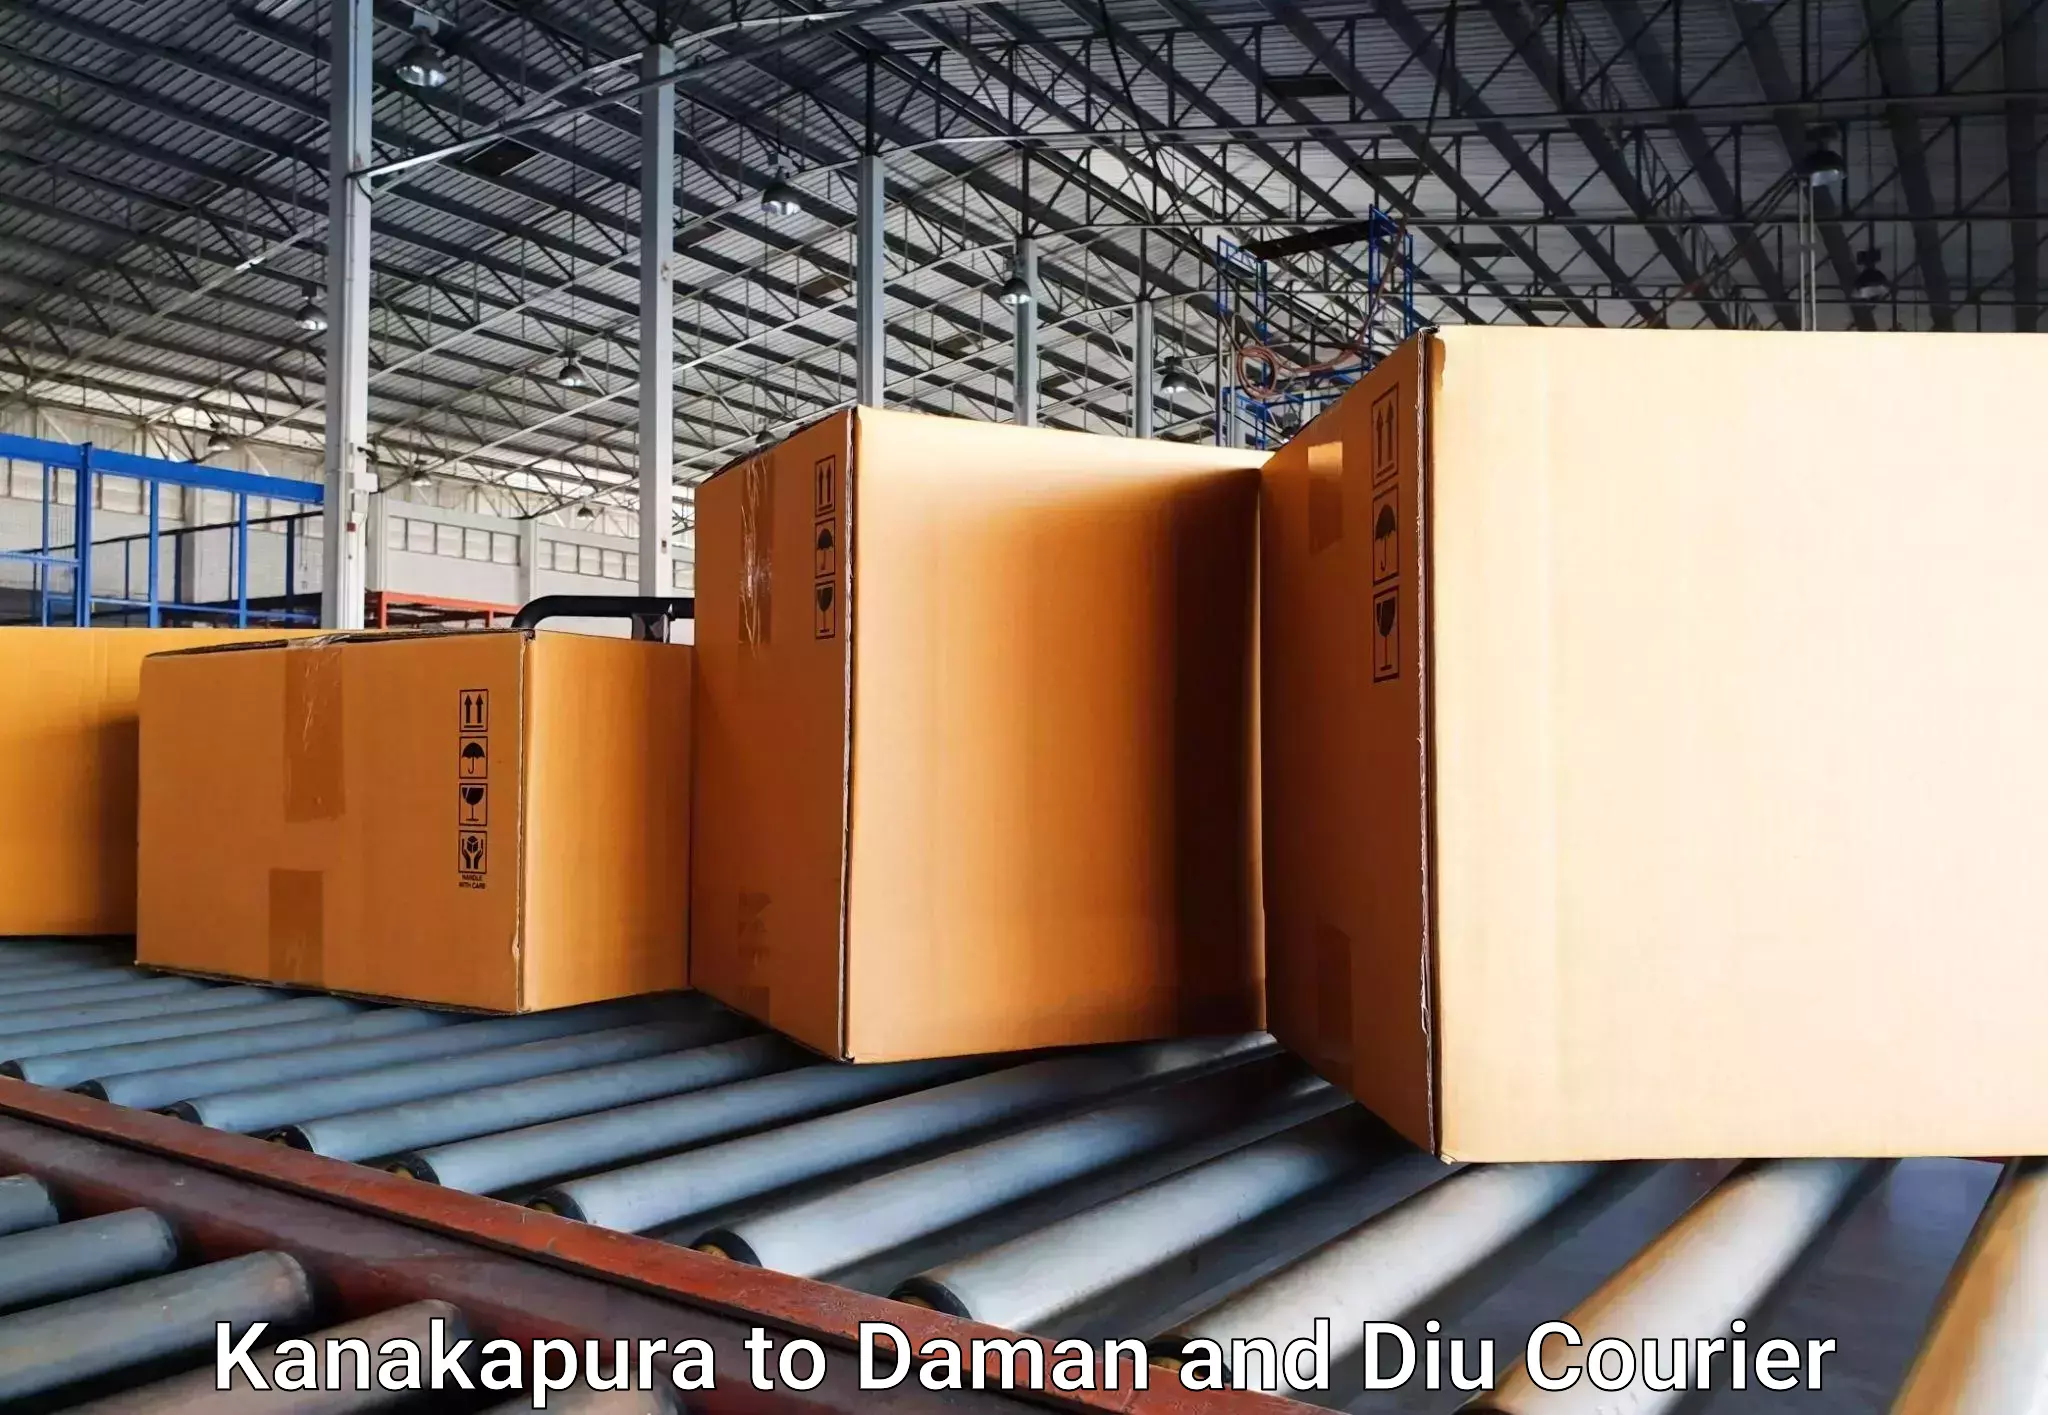 Express baggage shipping in Kanakapura to Daman and Diu